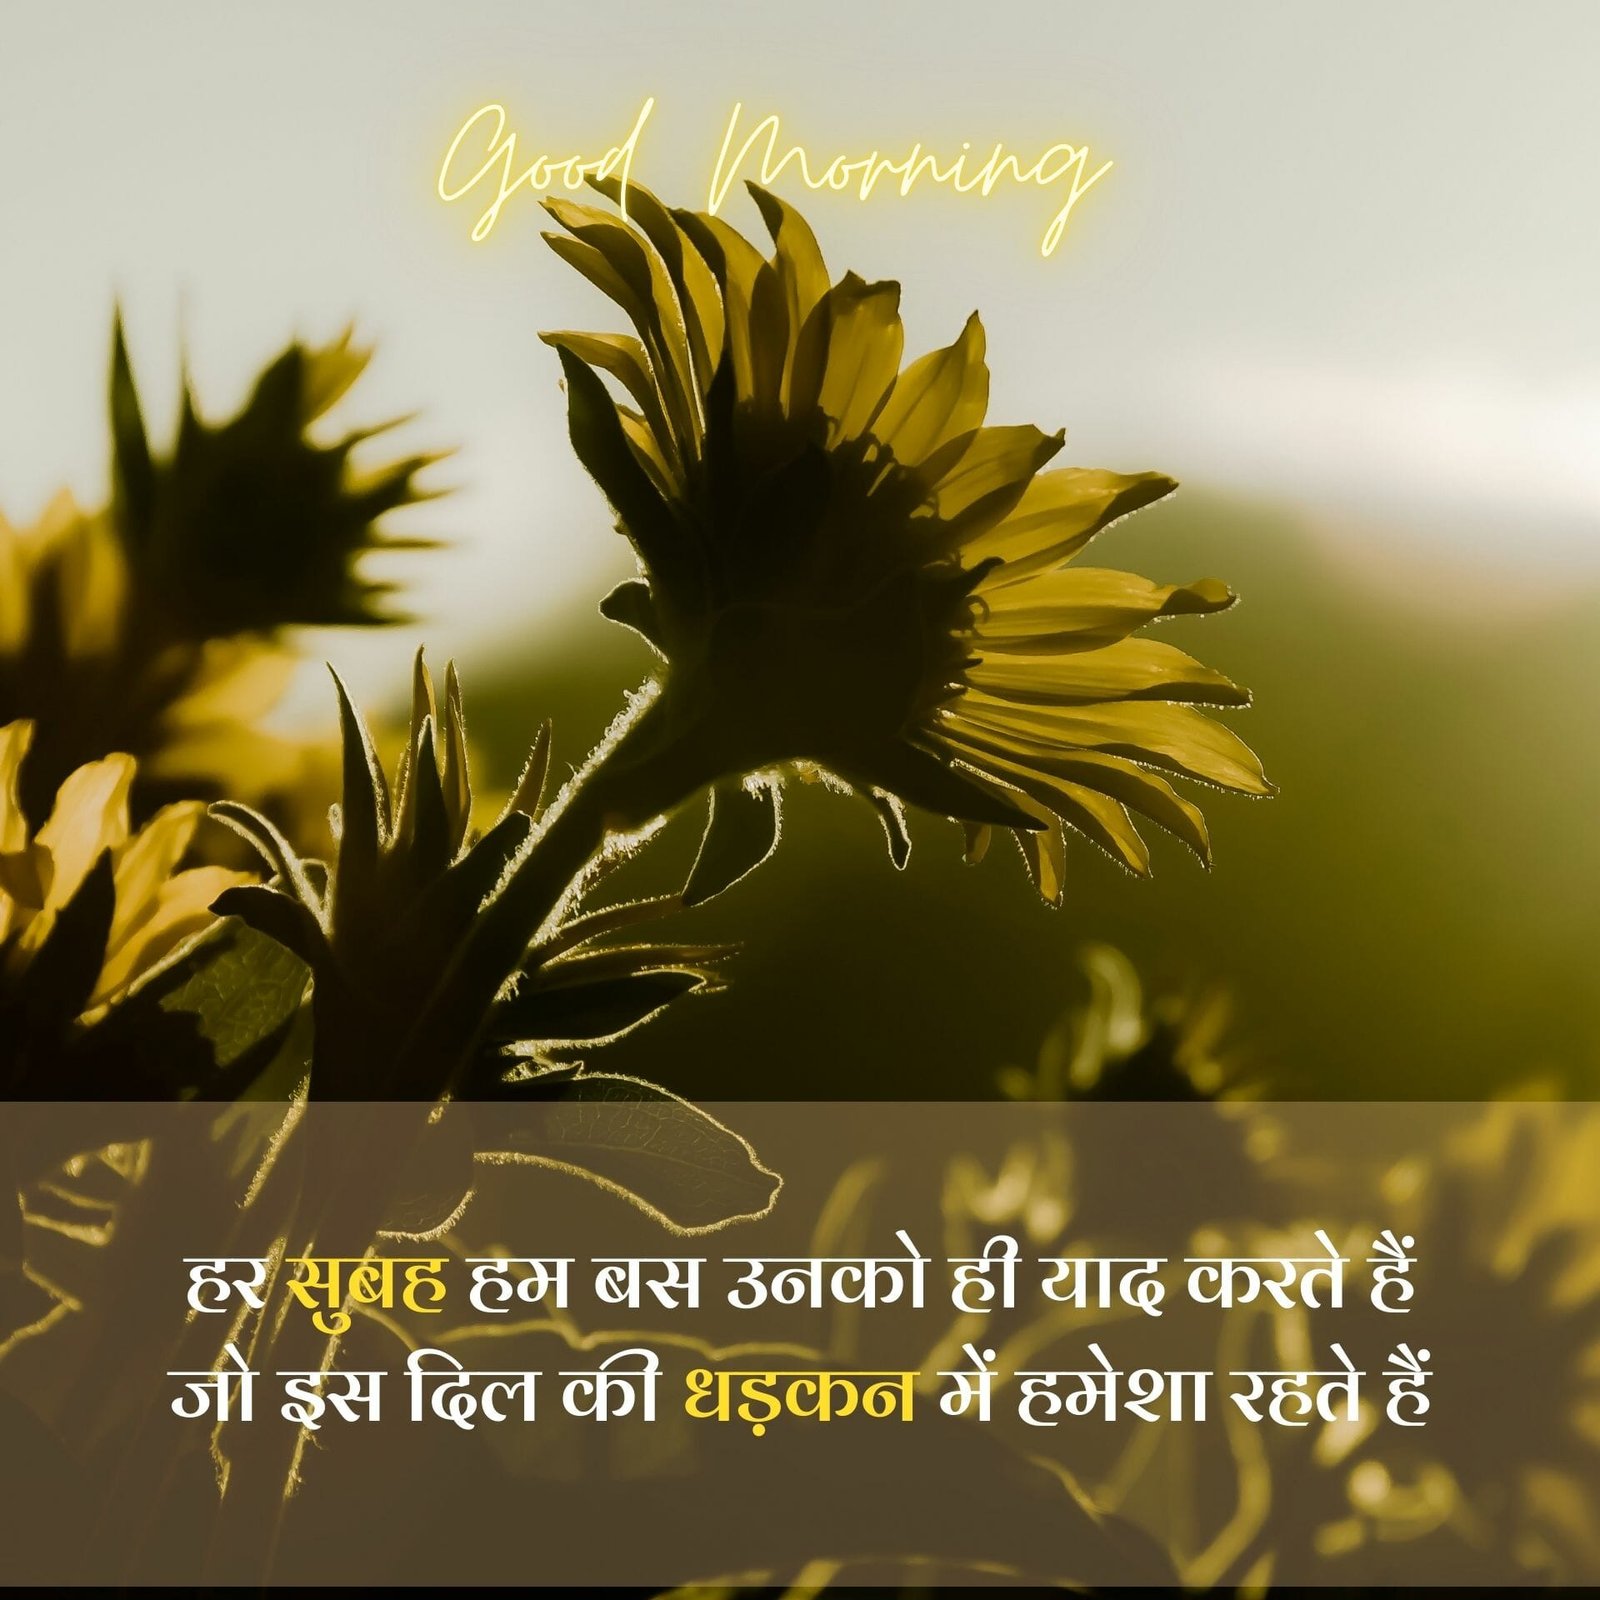 beautiful good morning image in hindi